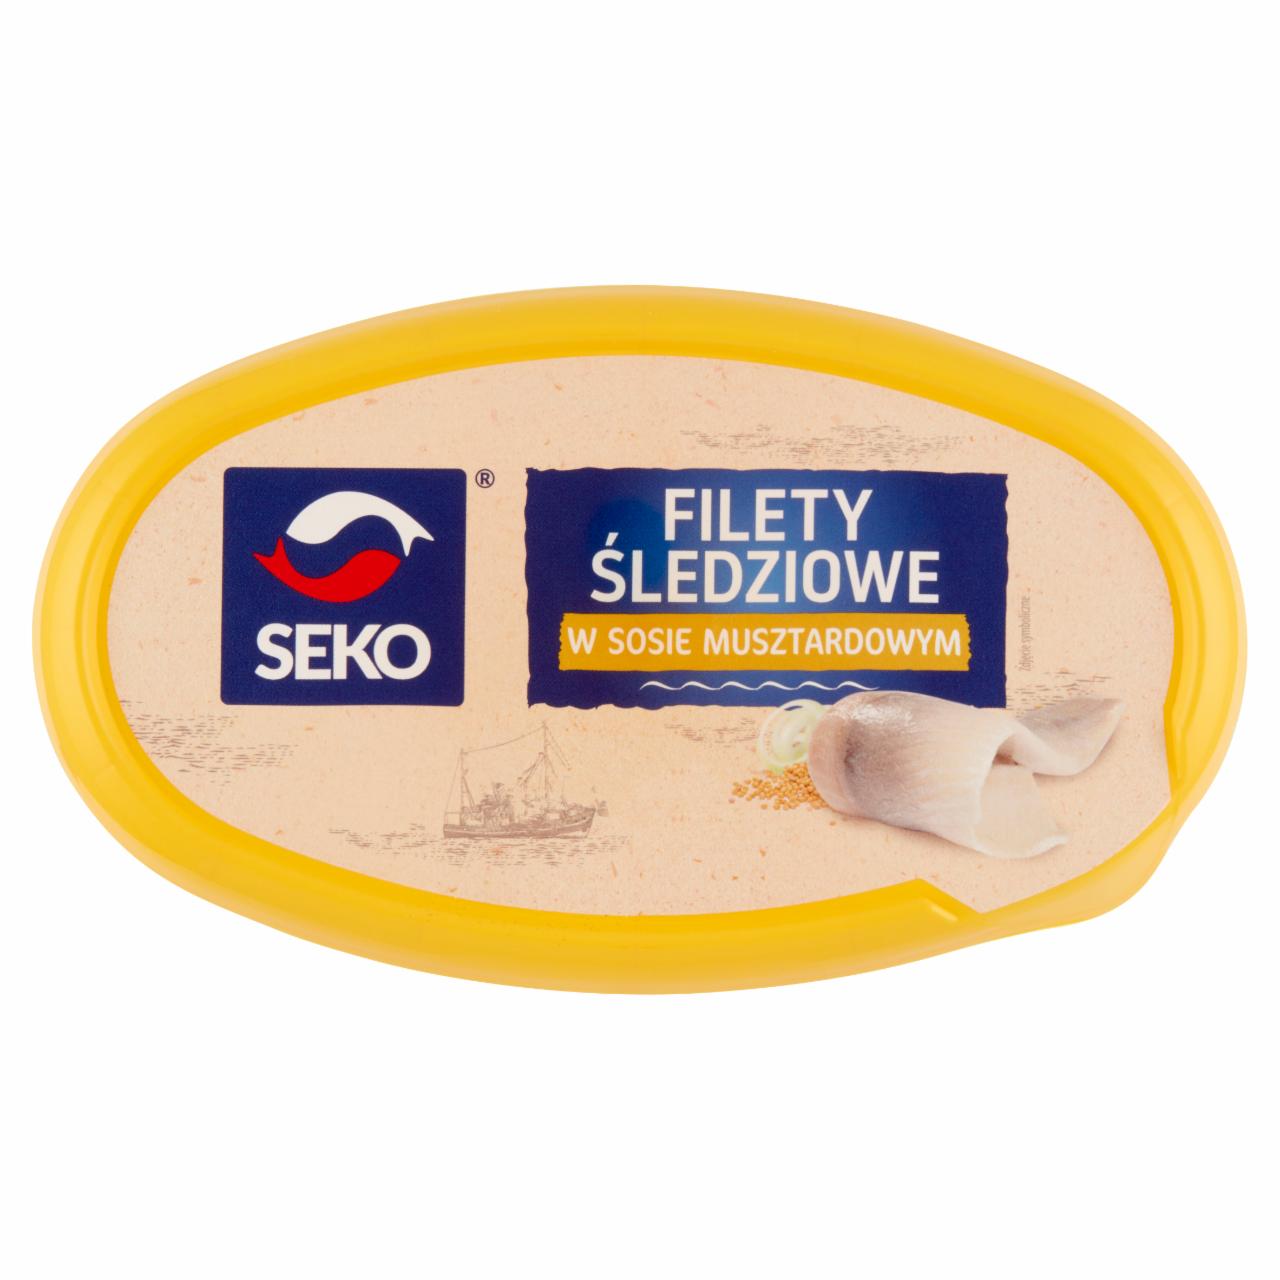 Zdjęcia - Seko Filety śledziowe w sosie musztardowym 250 g